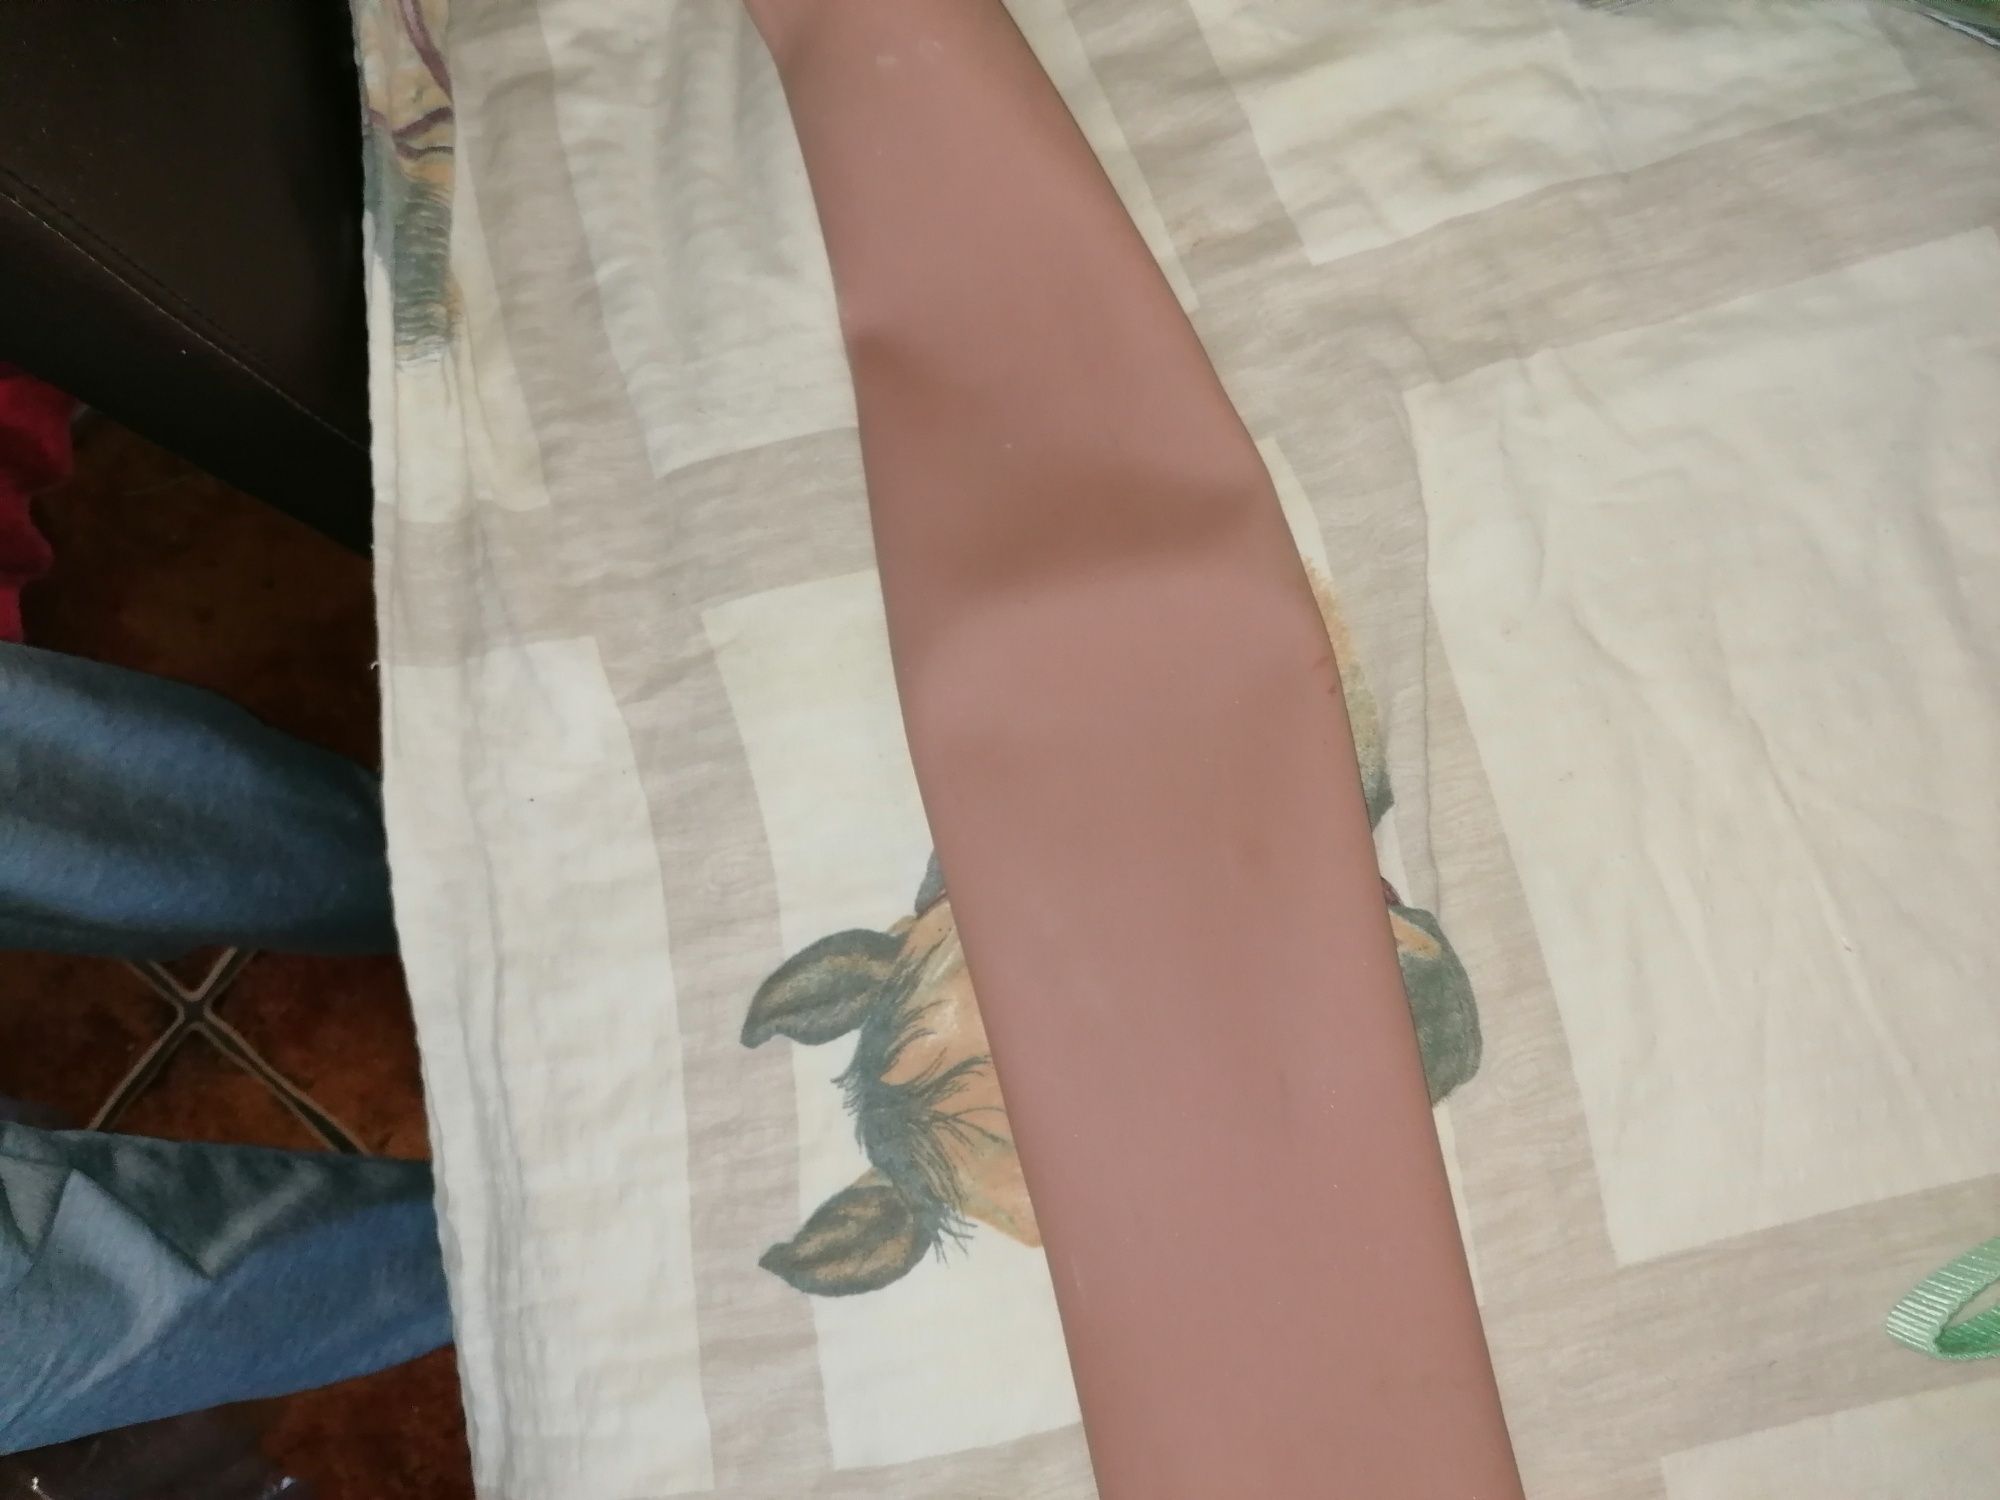 Proteza podudzia fkex skin lewa 24 rozmiar nowe